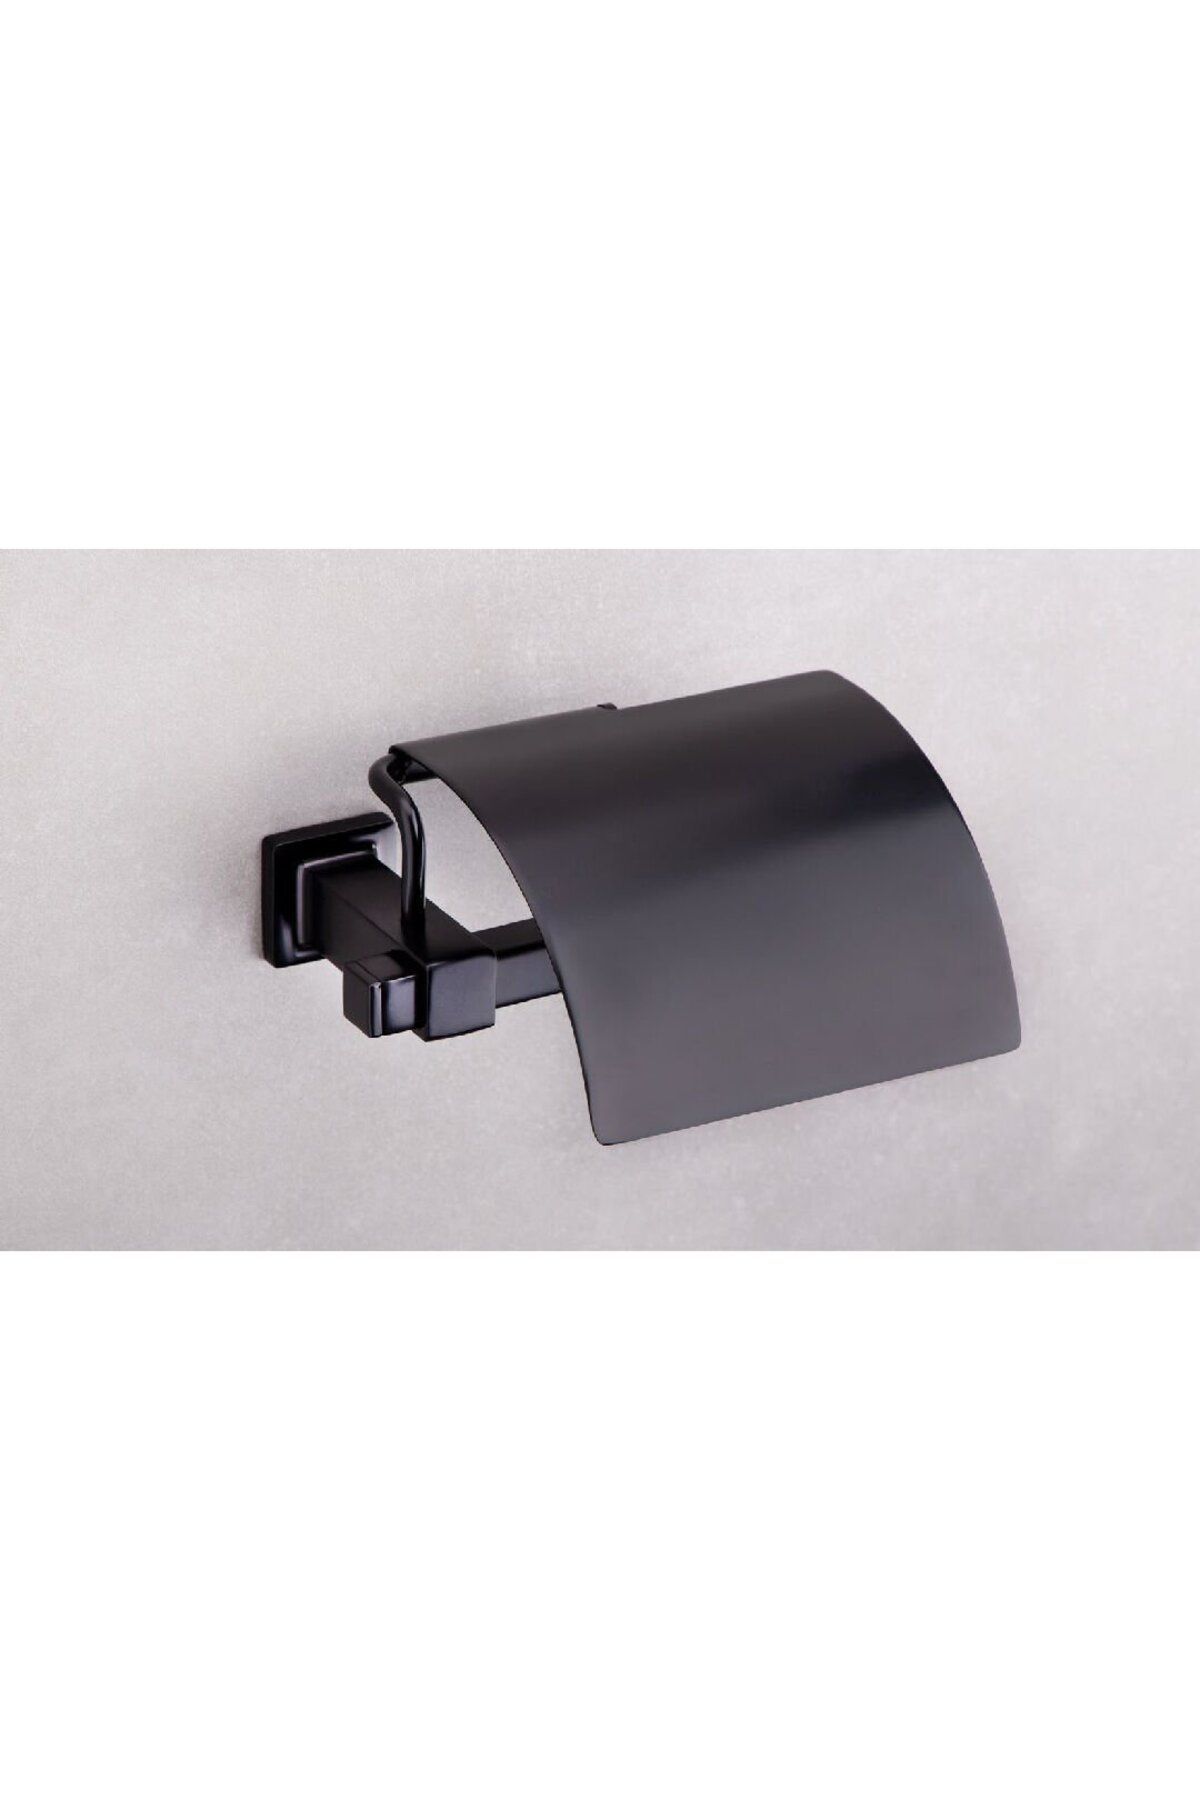 Q-Lıne Kapaklı Tuvalet Kağıtlığı Siyah Renk 87X118X158 mm